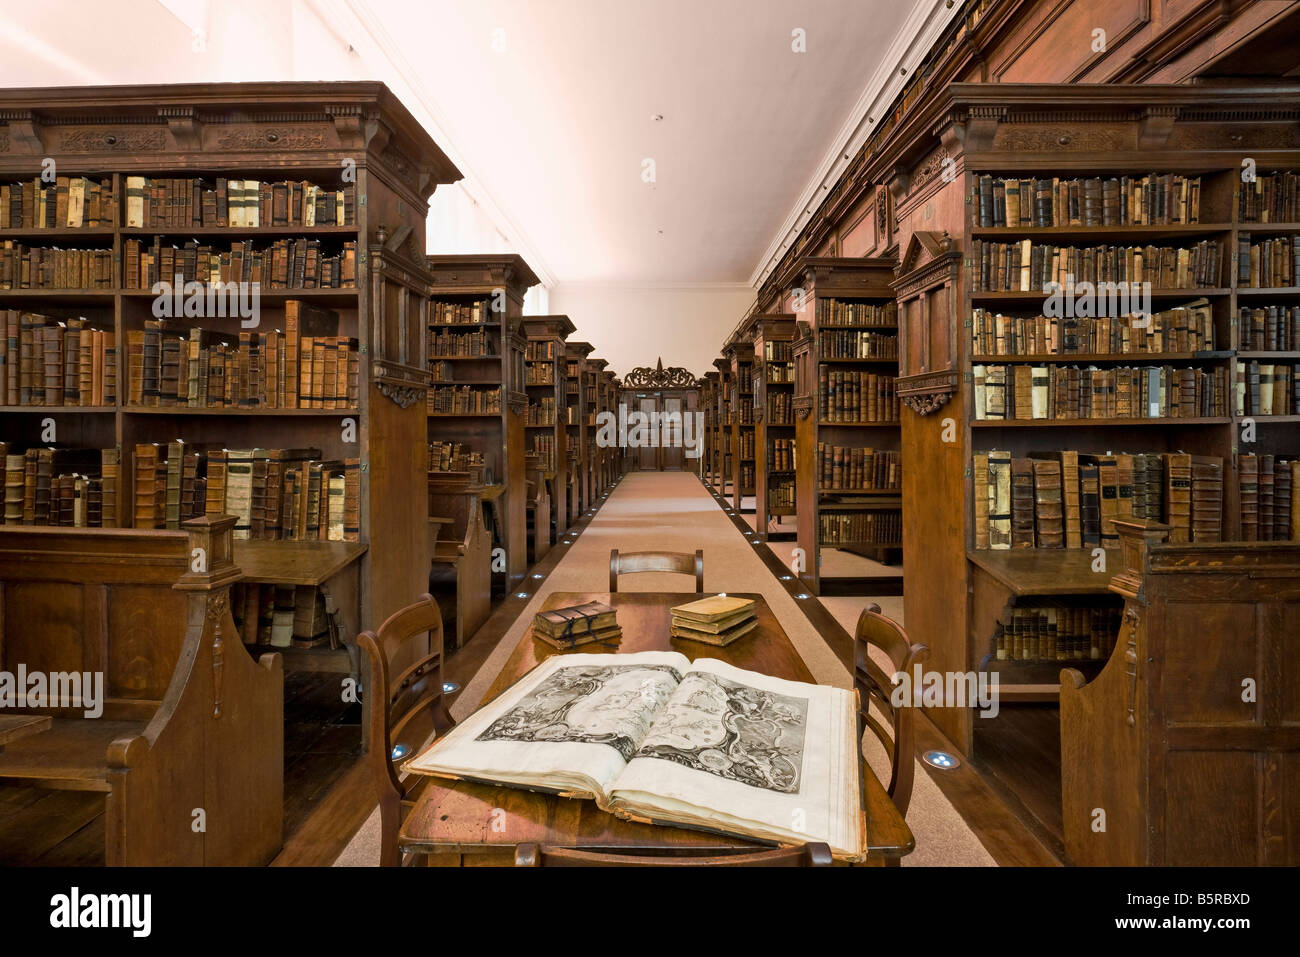 Библиотека рассказов горячих. Библиотека Оксфорд 19 век. Оксфордский университет библиотека. Государственная публичная историческая библиотека (ГПИБ). Старая библиотека.